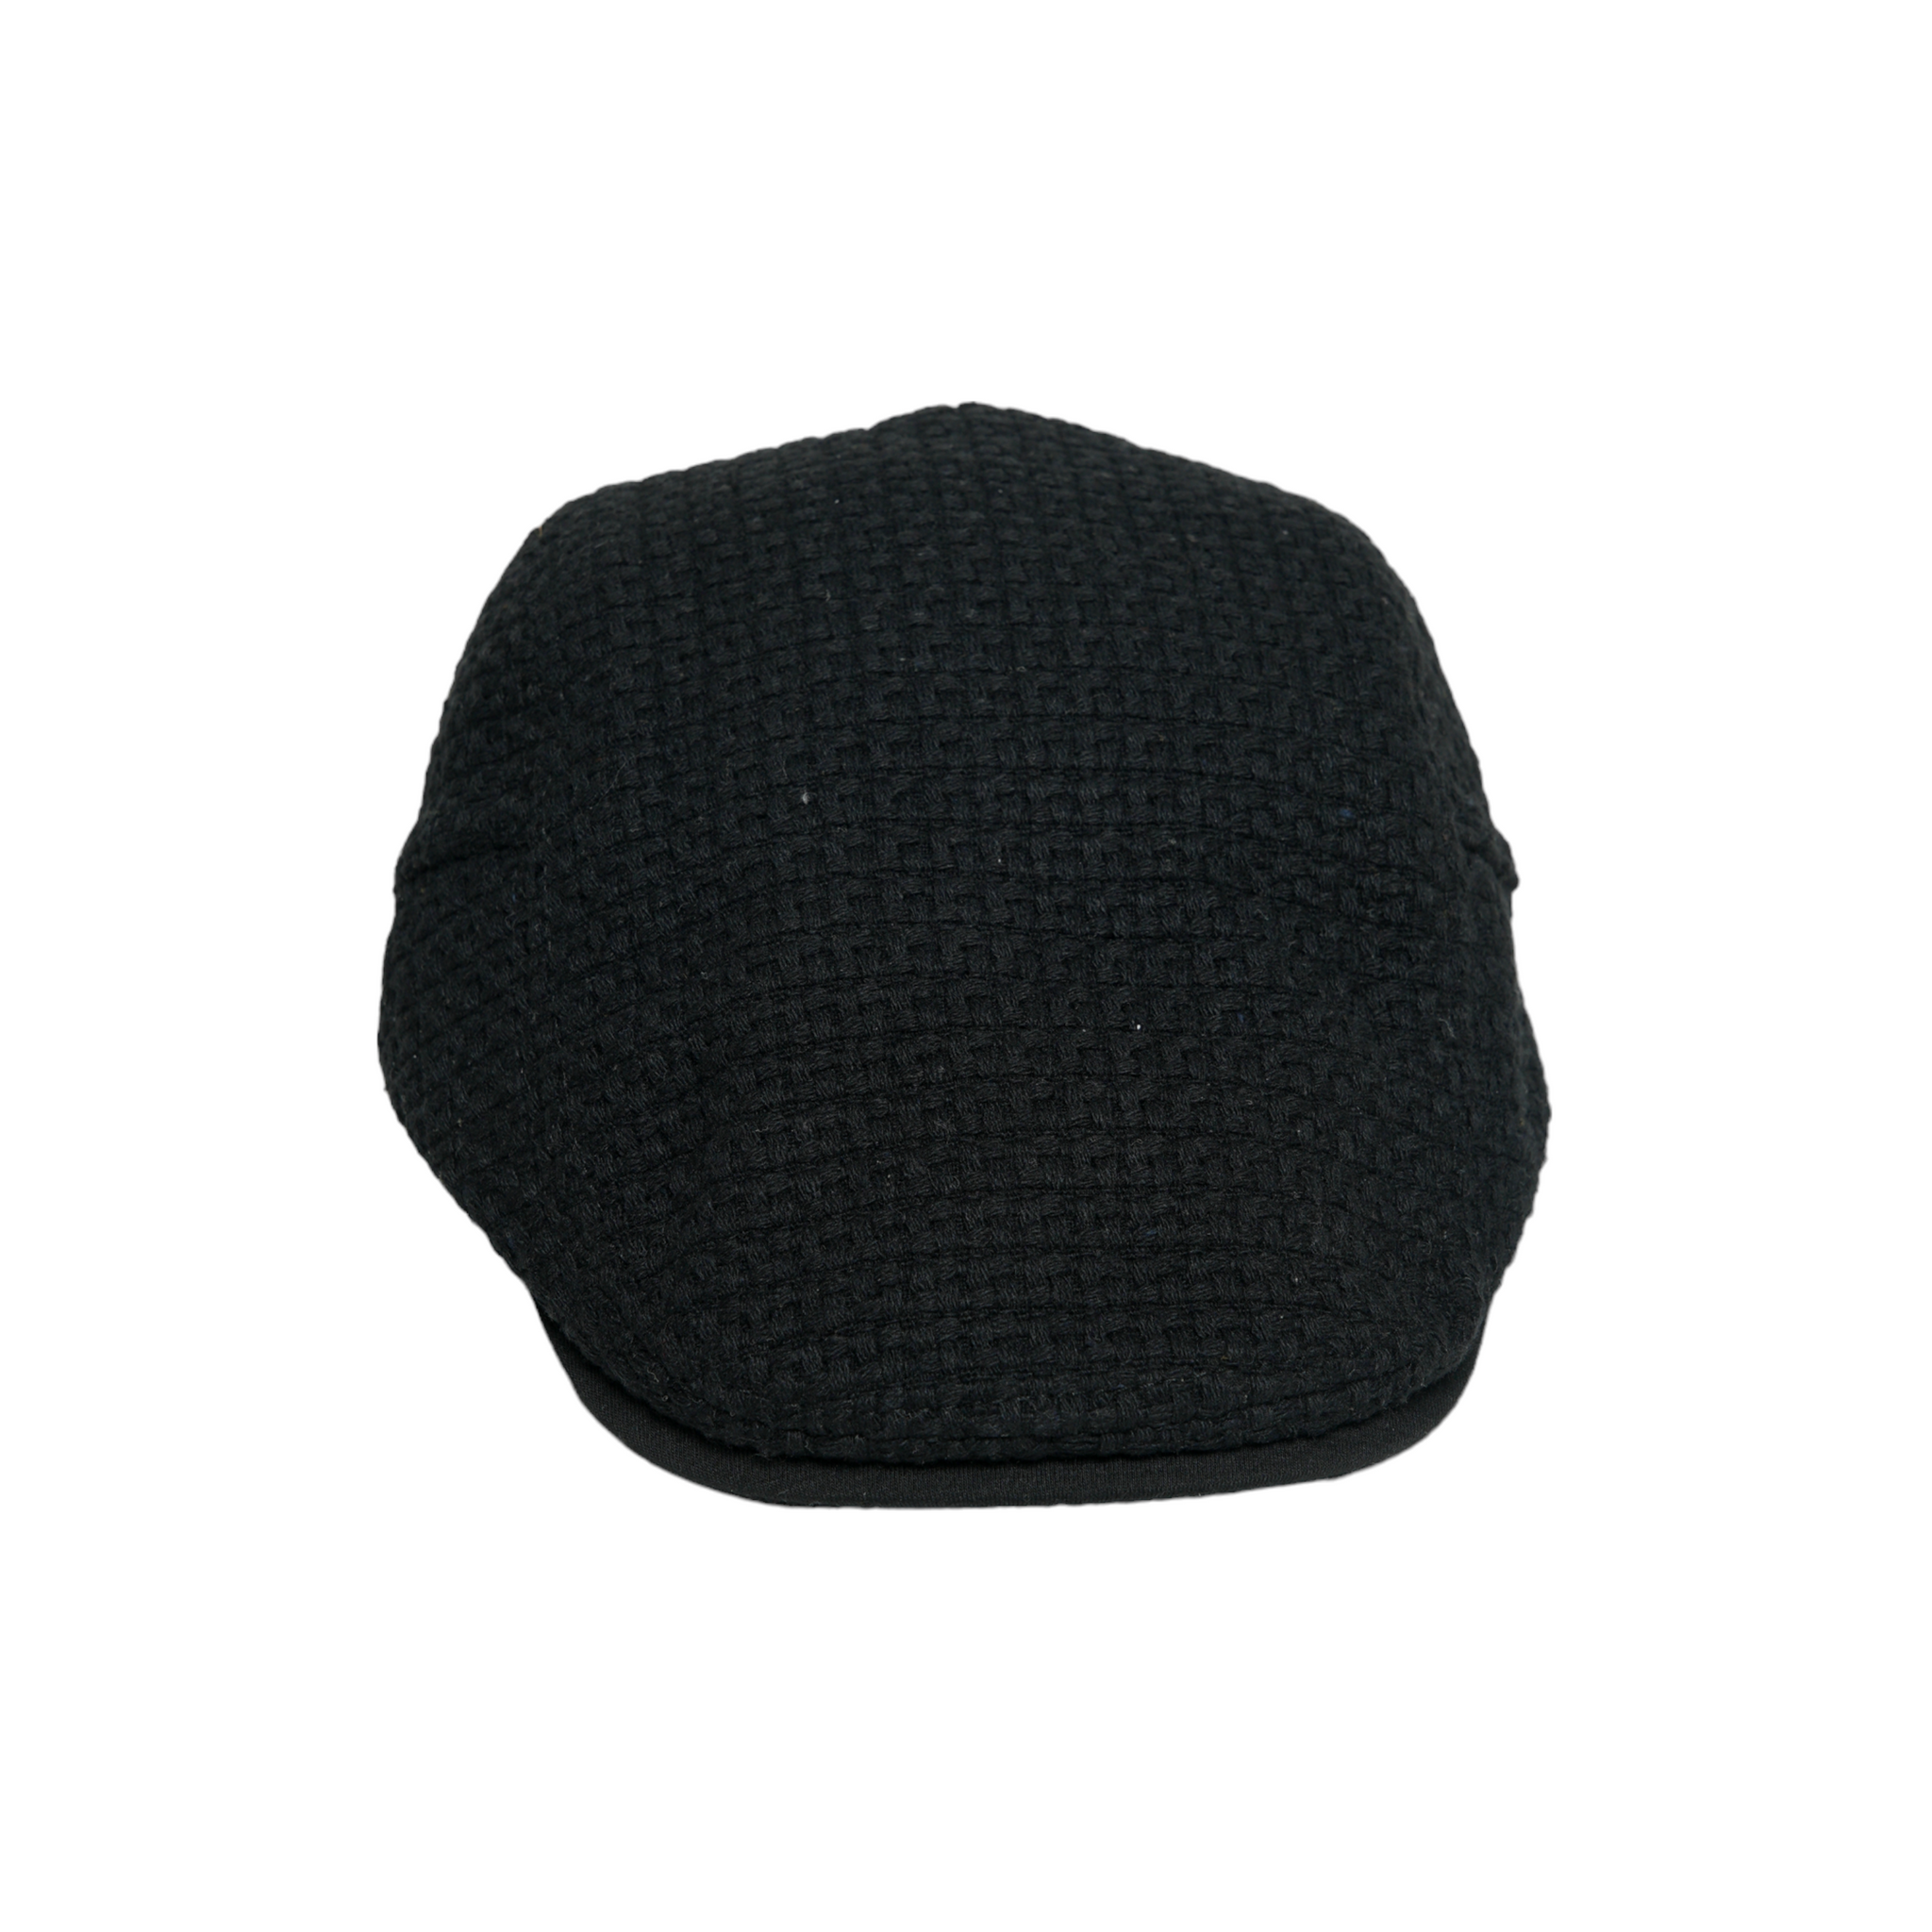 Chokore Knitted Autumn Ivy Cap (Black)